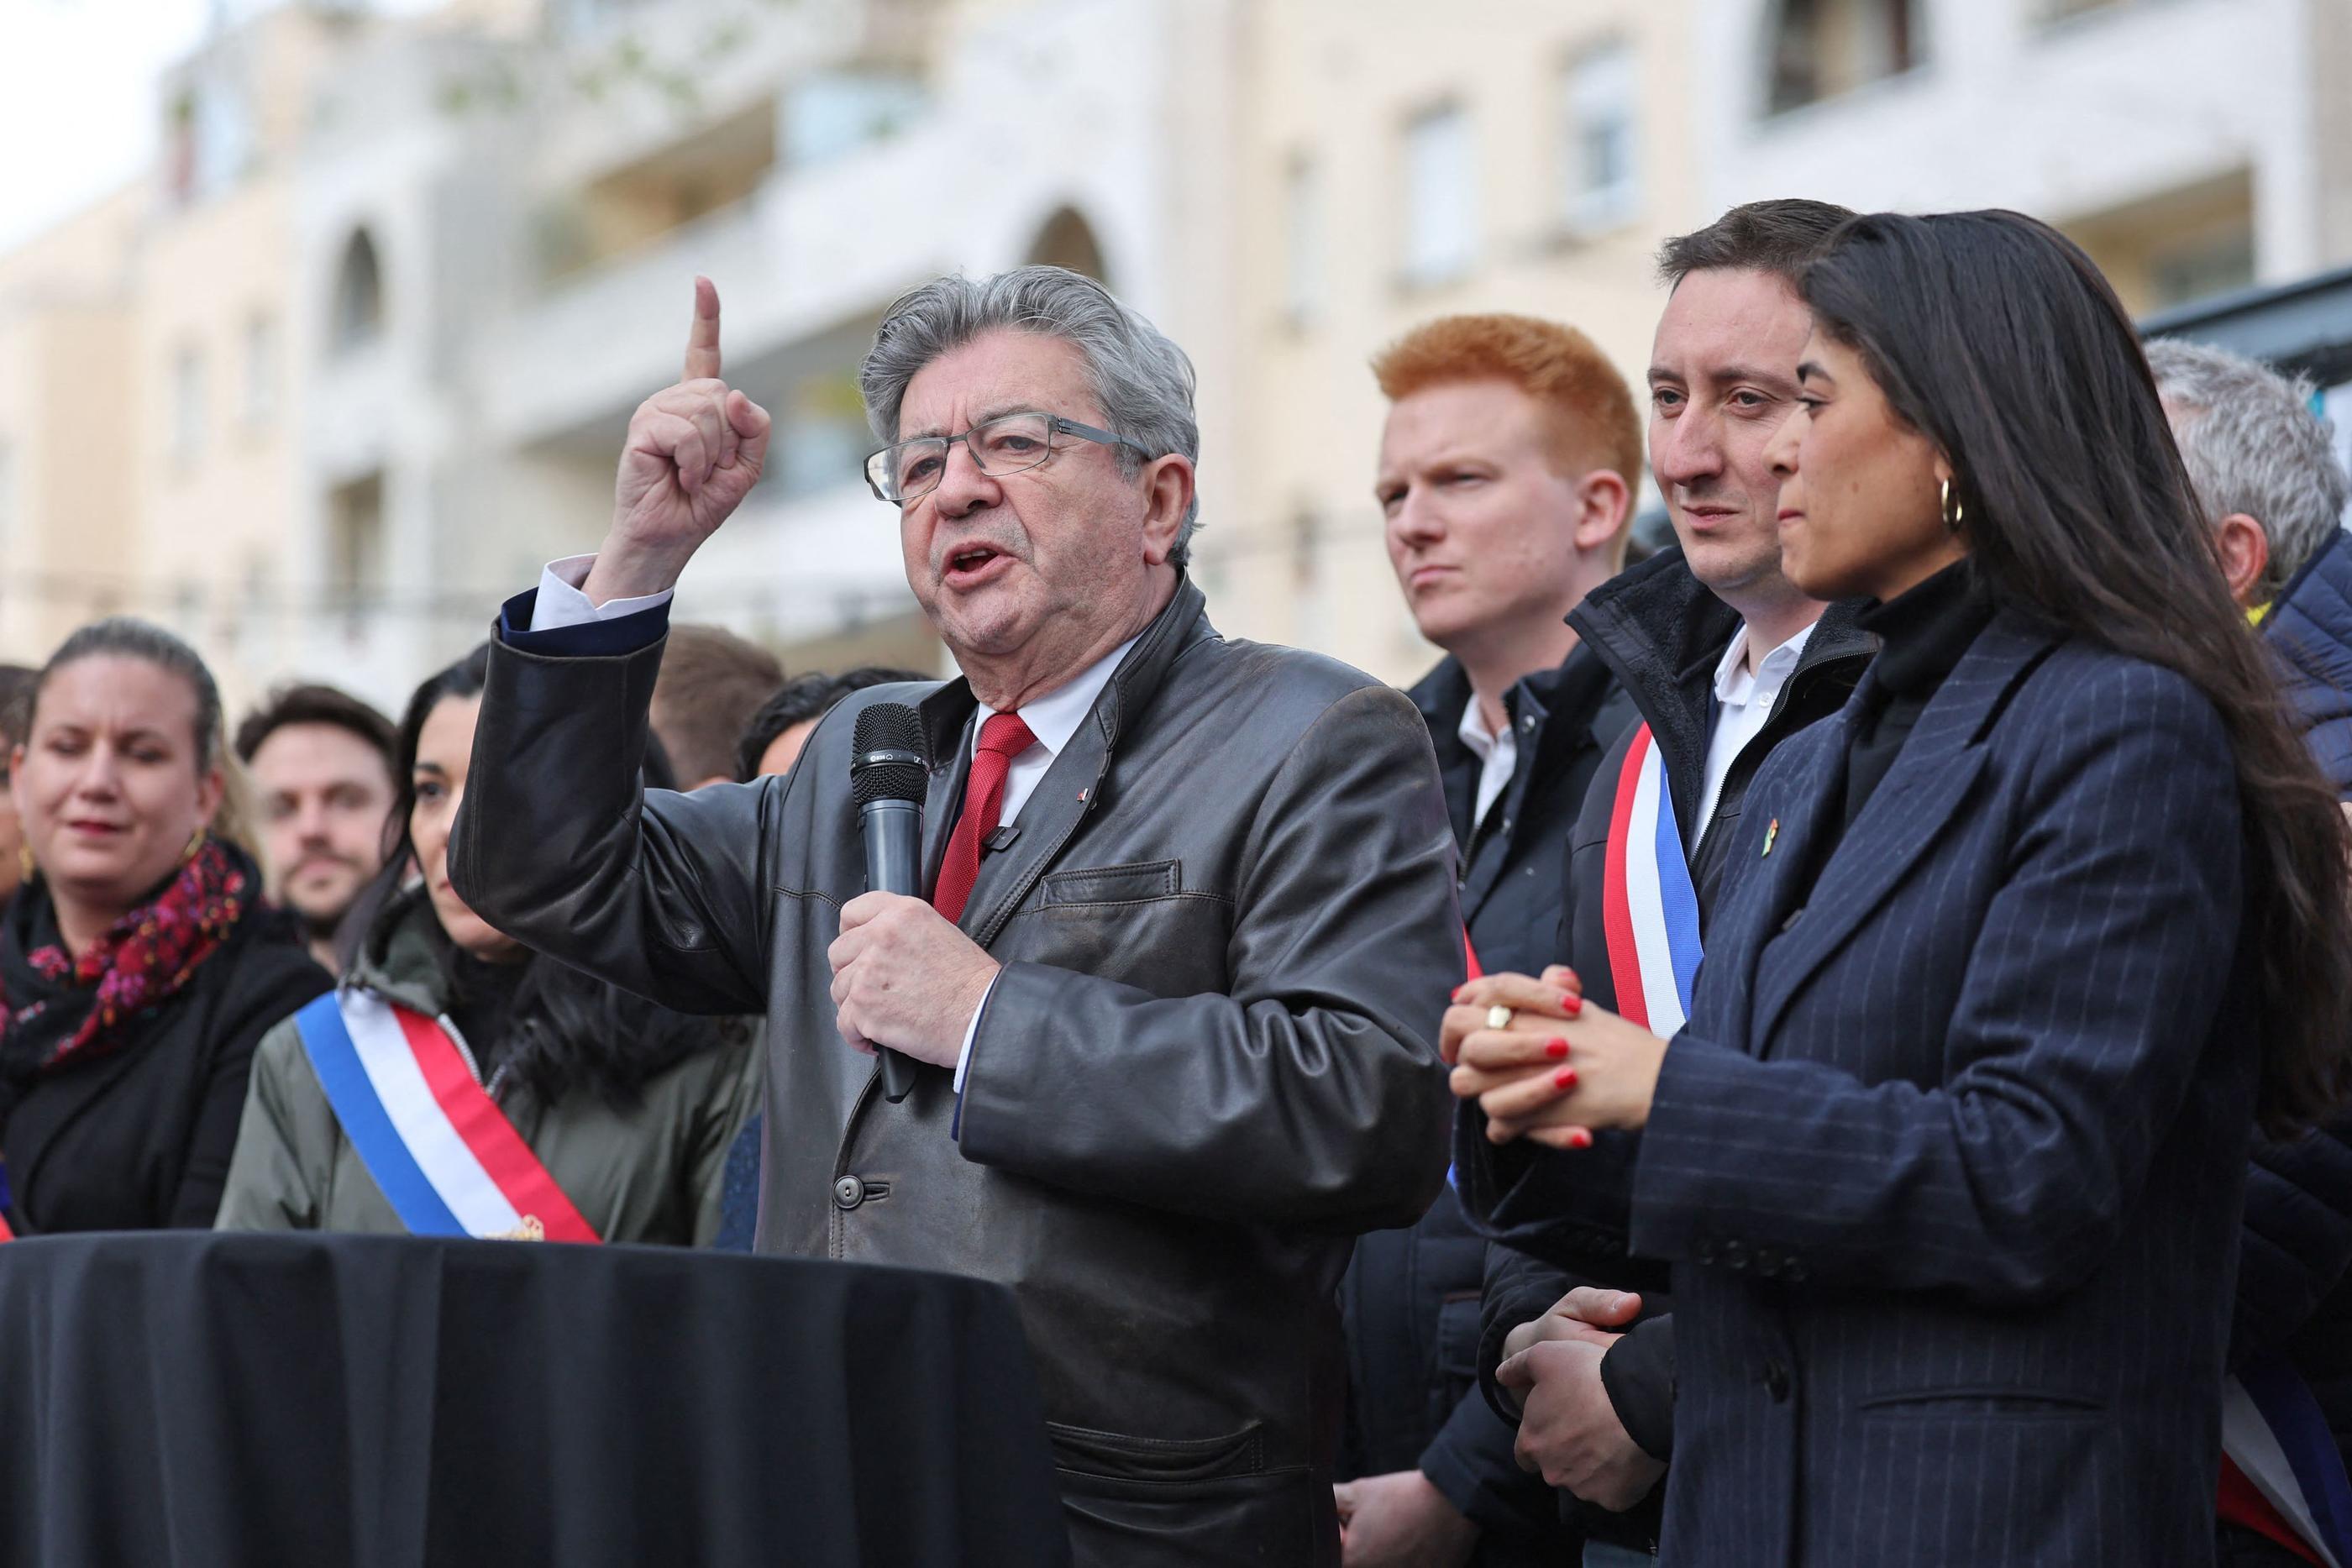 La conférence à l'intérieur de l'université interdite, Jean-Luc Melenchon avait pris la parole sur un trottoir, à Lille, jeudi 18 avril. AFP/François Lo Presti